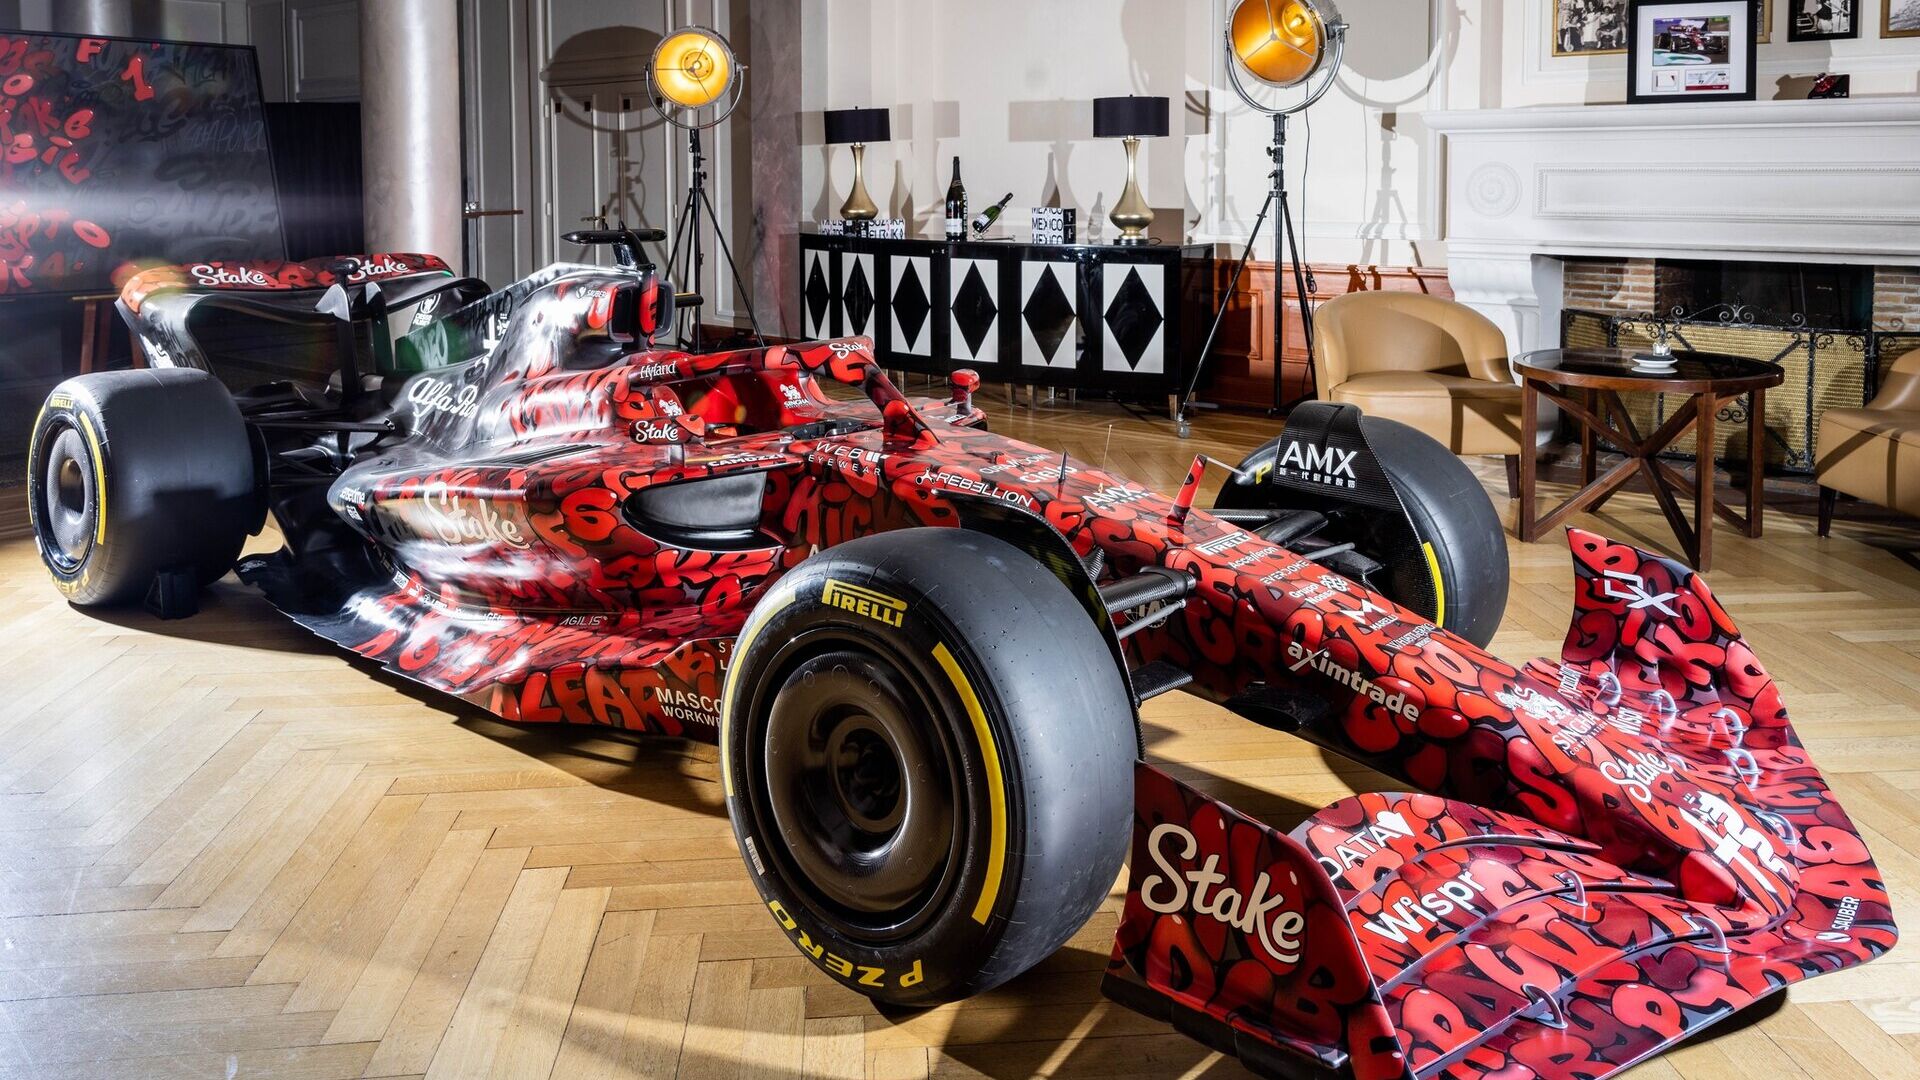 Alfa Romeo: Alfa Romeo F1 Team Stake баг нь Базель хотод үйл ажиллагаа явуулдаг дэлхийд алдартай Германы зураач BOOGIE-тэй хамтран шүтэн бишрэгчдийг багтаа ойртуулах, 2023 оны улирлын эхлэлийг тэмдэглэх зорилготой төсөл хэрэгжүүлэхээр ажиллаж эхэлсэн.